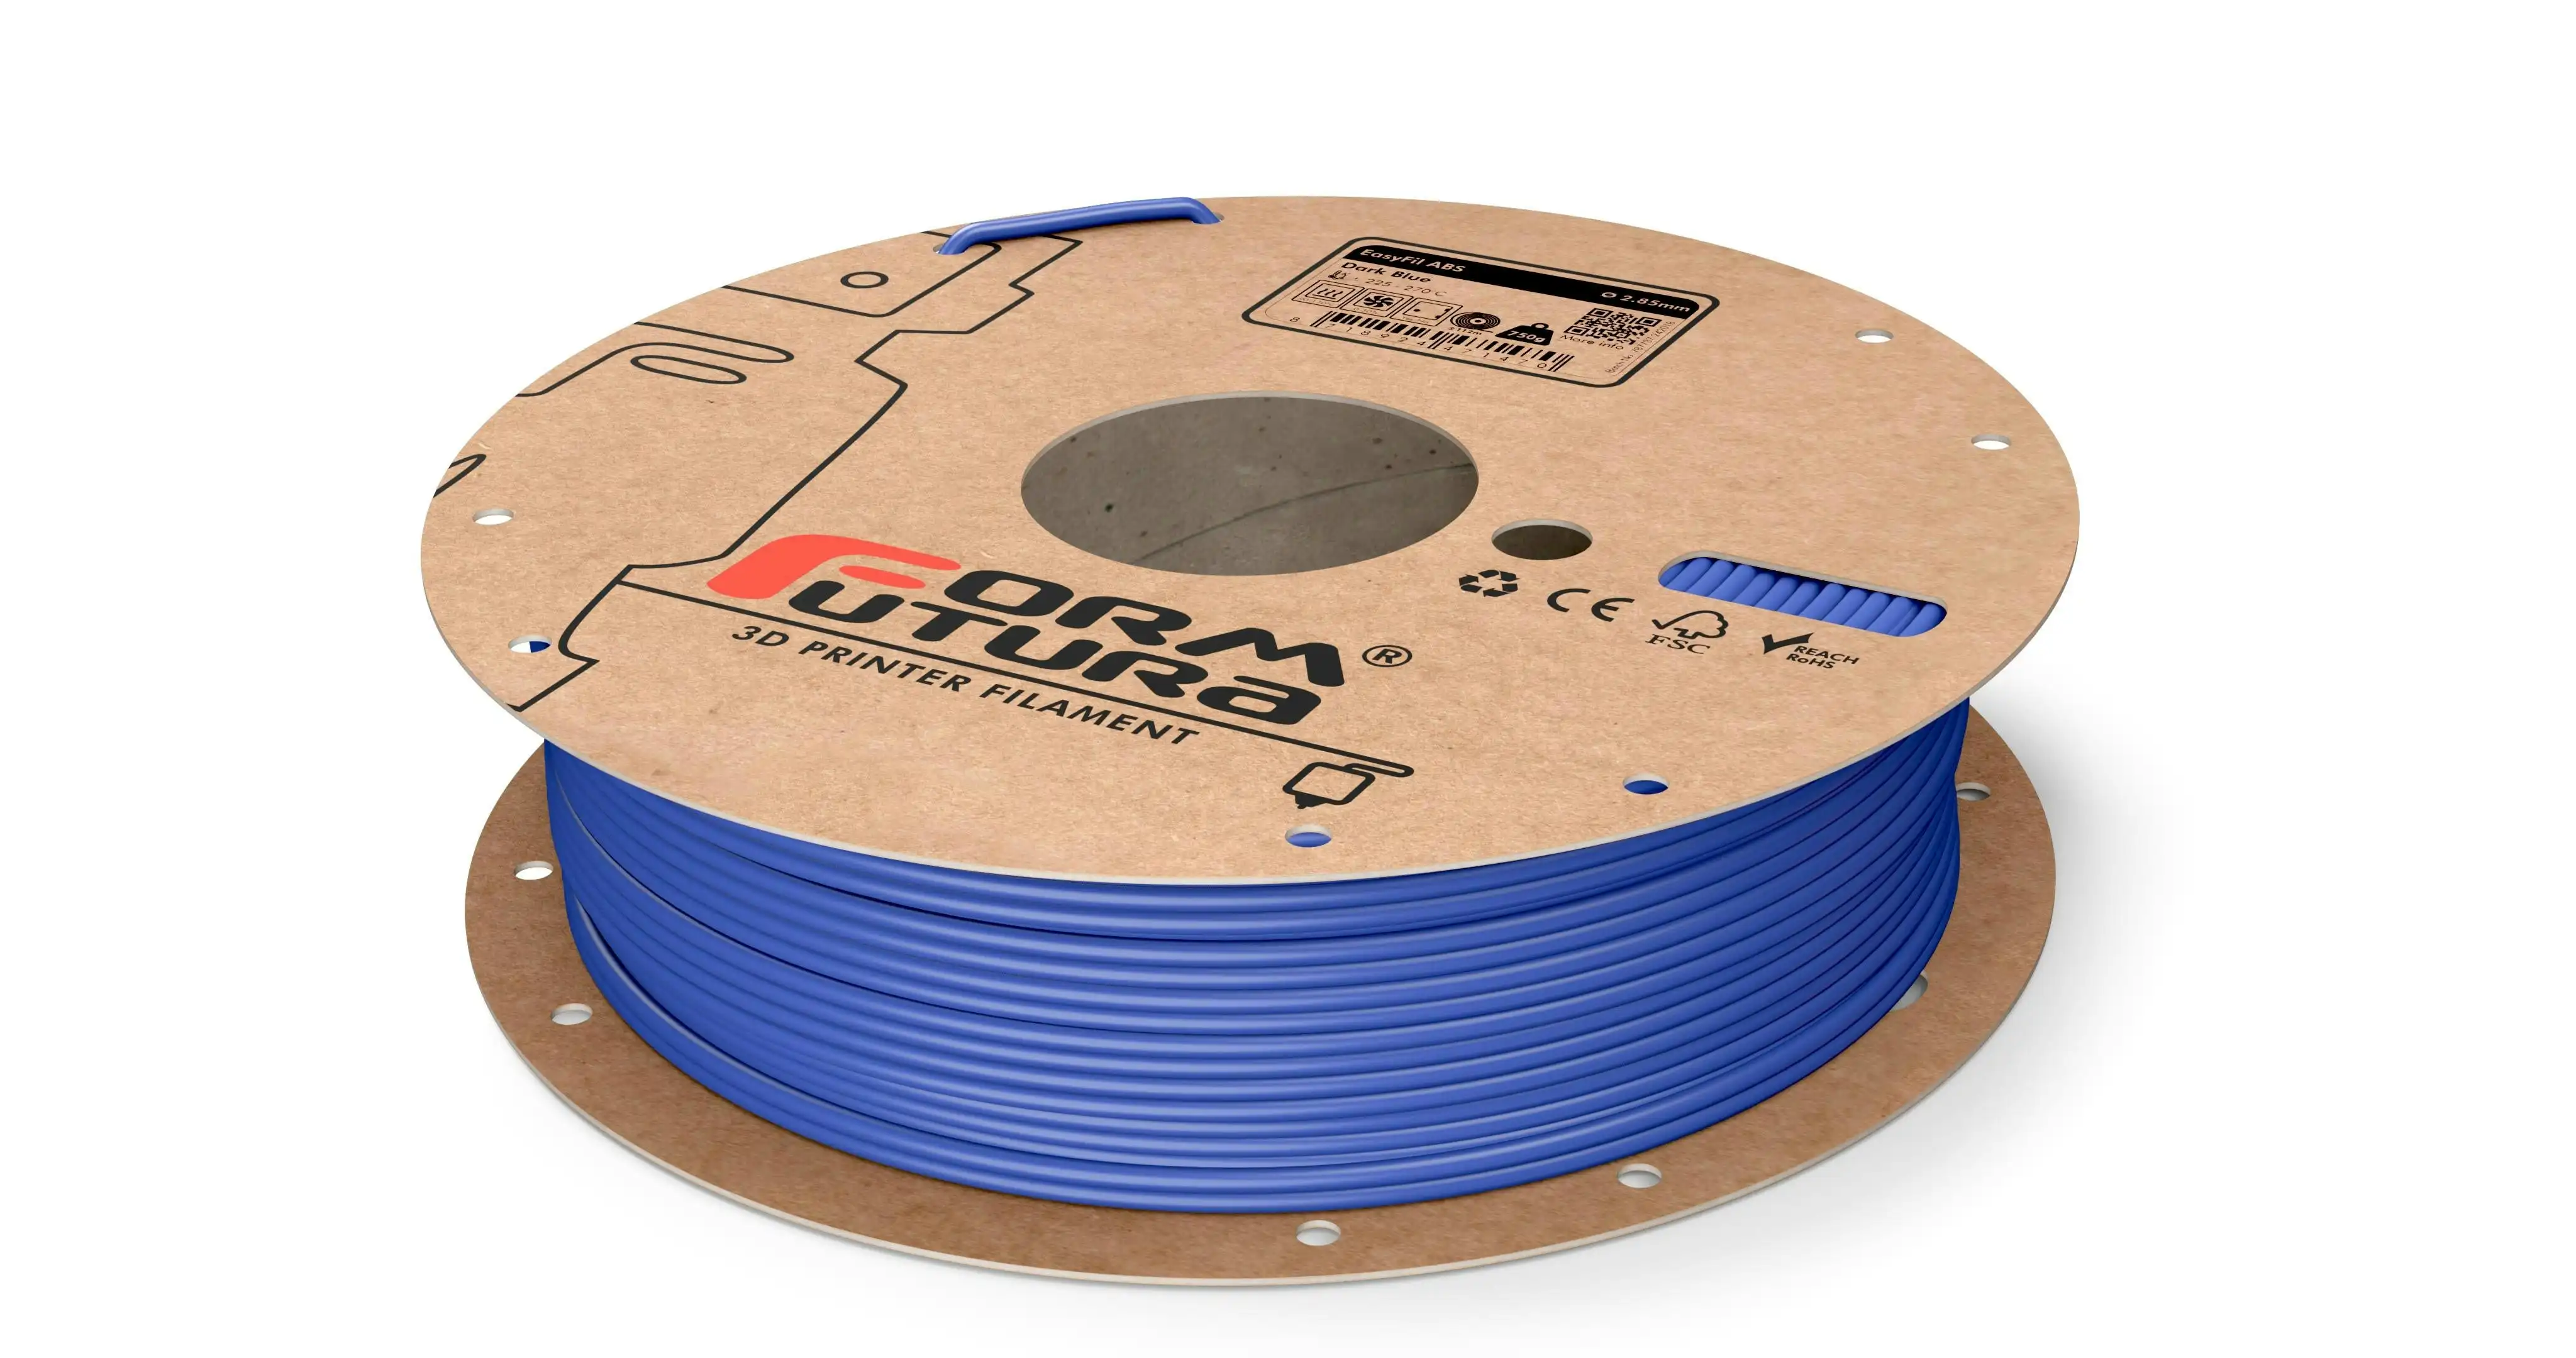 ABS Filament EasyFil ABS 2.85mm Dark Blue 750 gram 3D Printer Filament